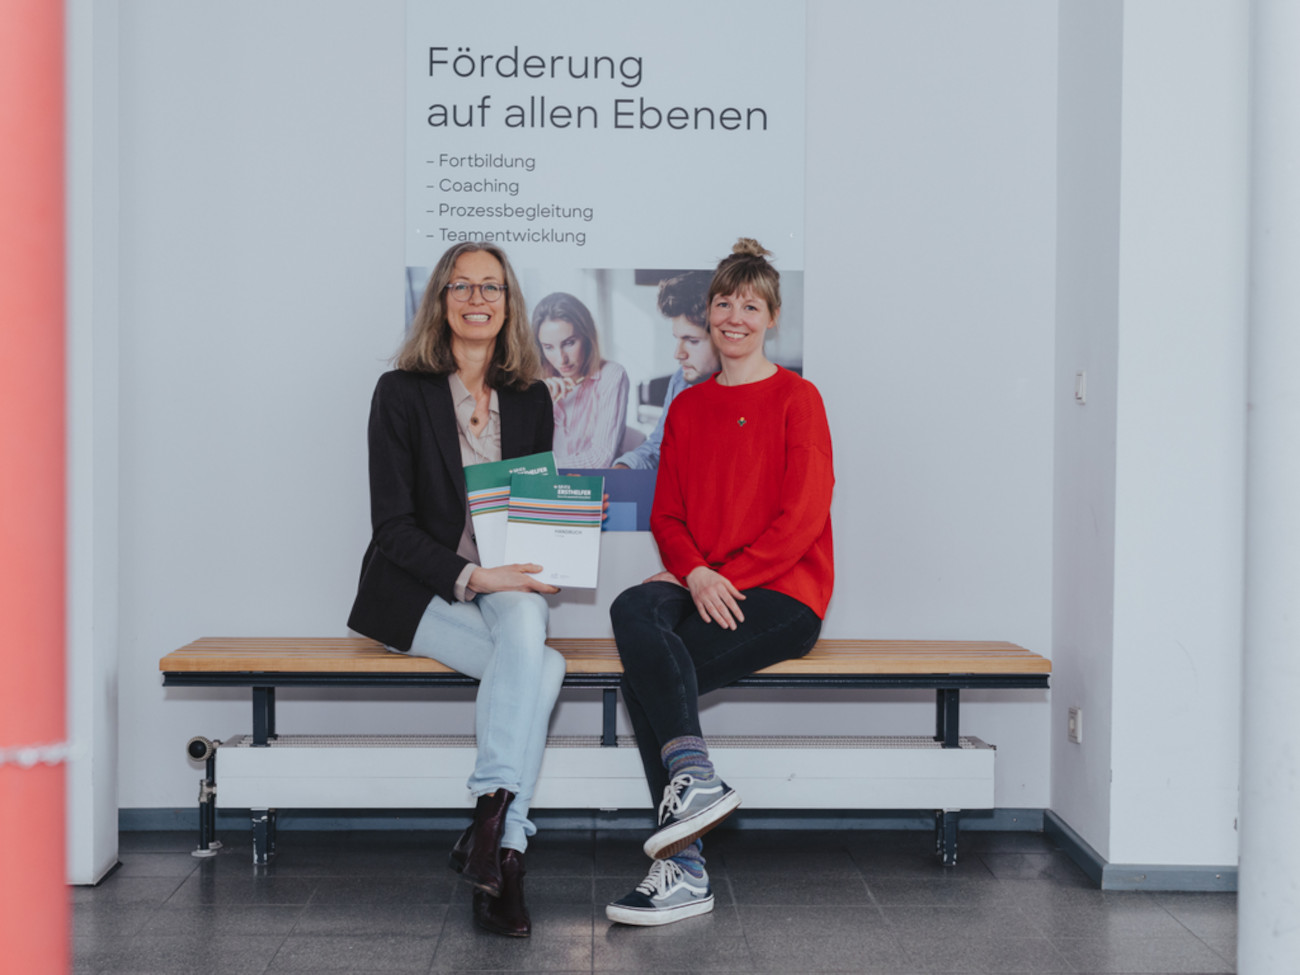 Simone Oelze und Alexandra Baumkötter sitzen auf einer Bank. Sie halten MHFA Kataloge in den Händen.